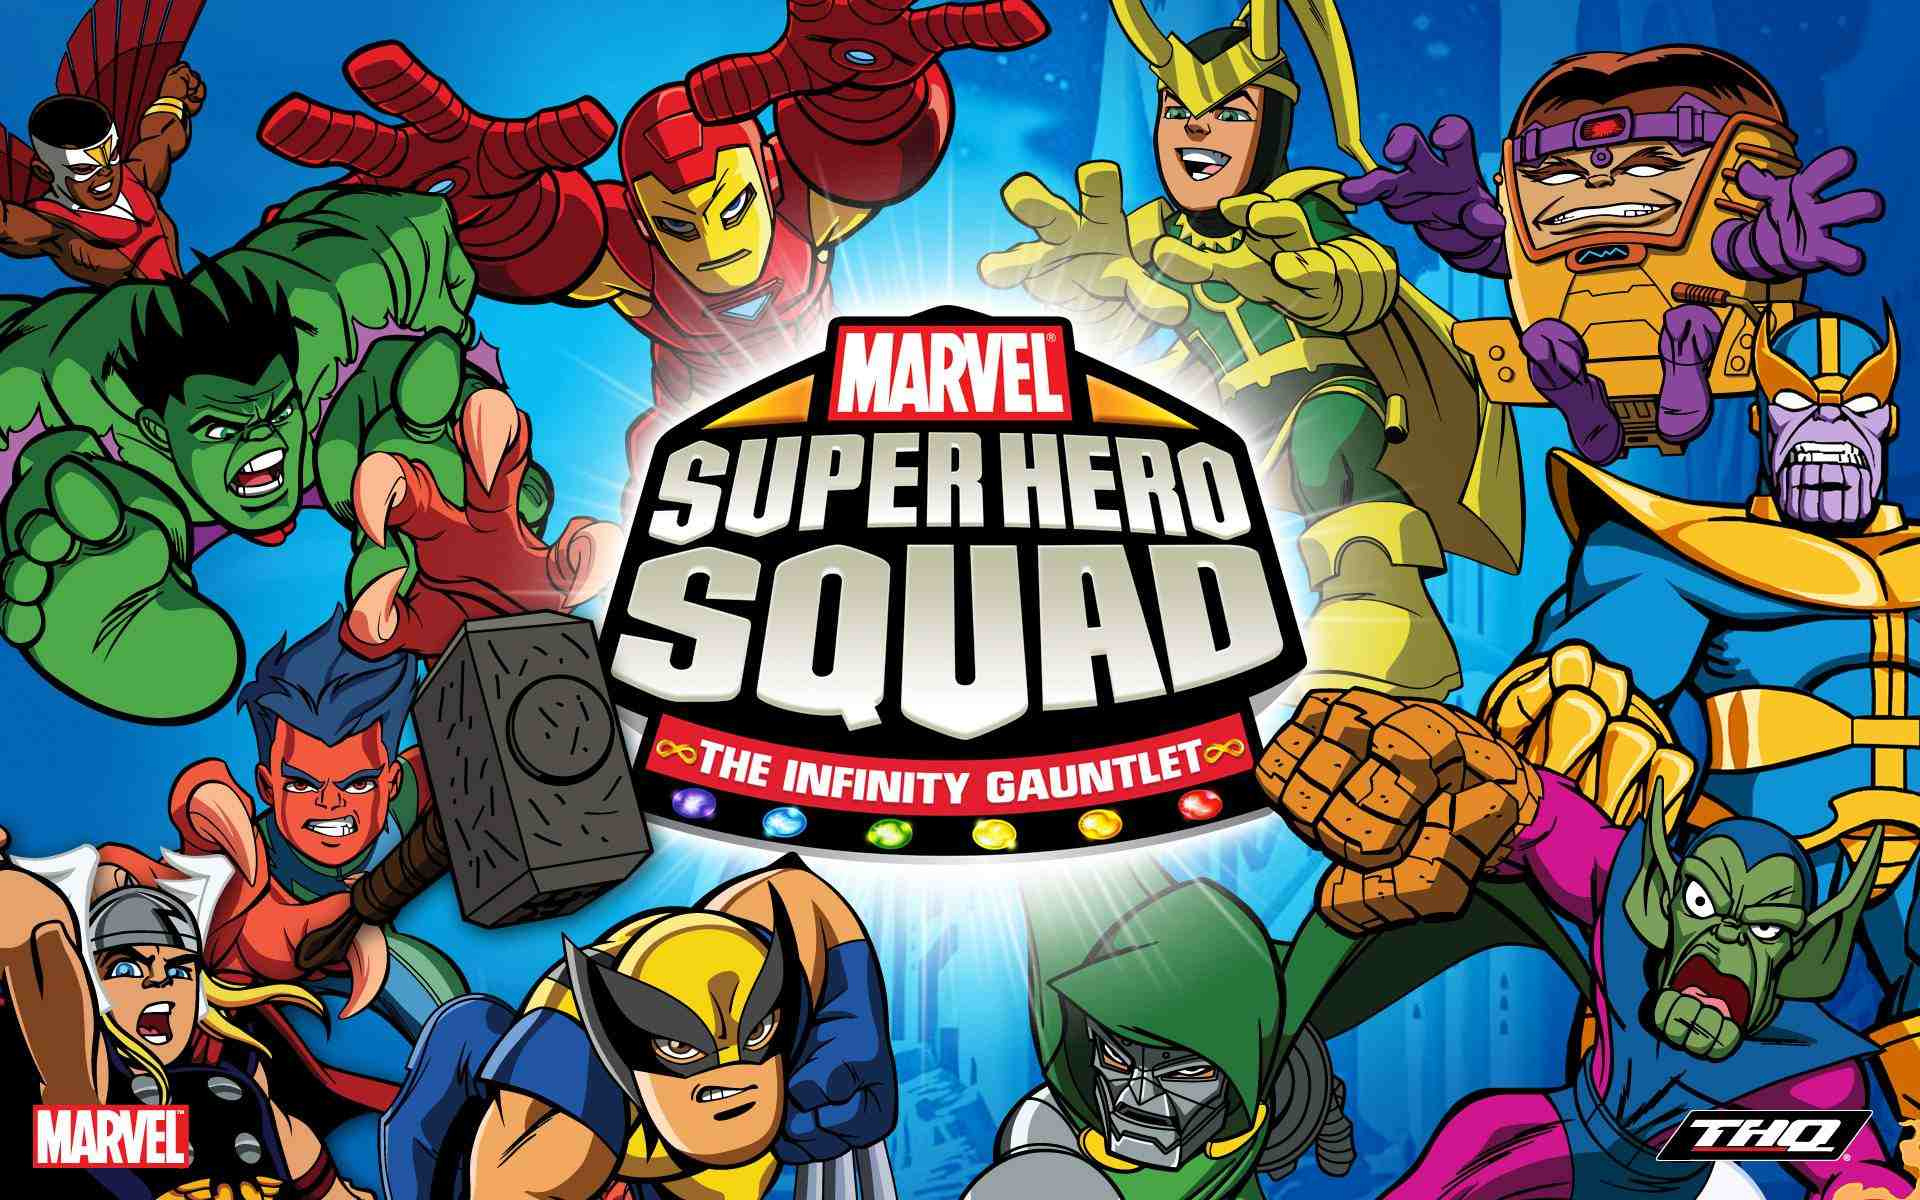 Super Hero Squad